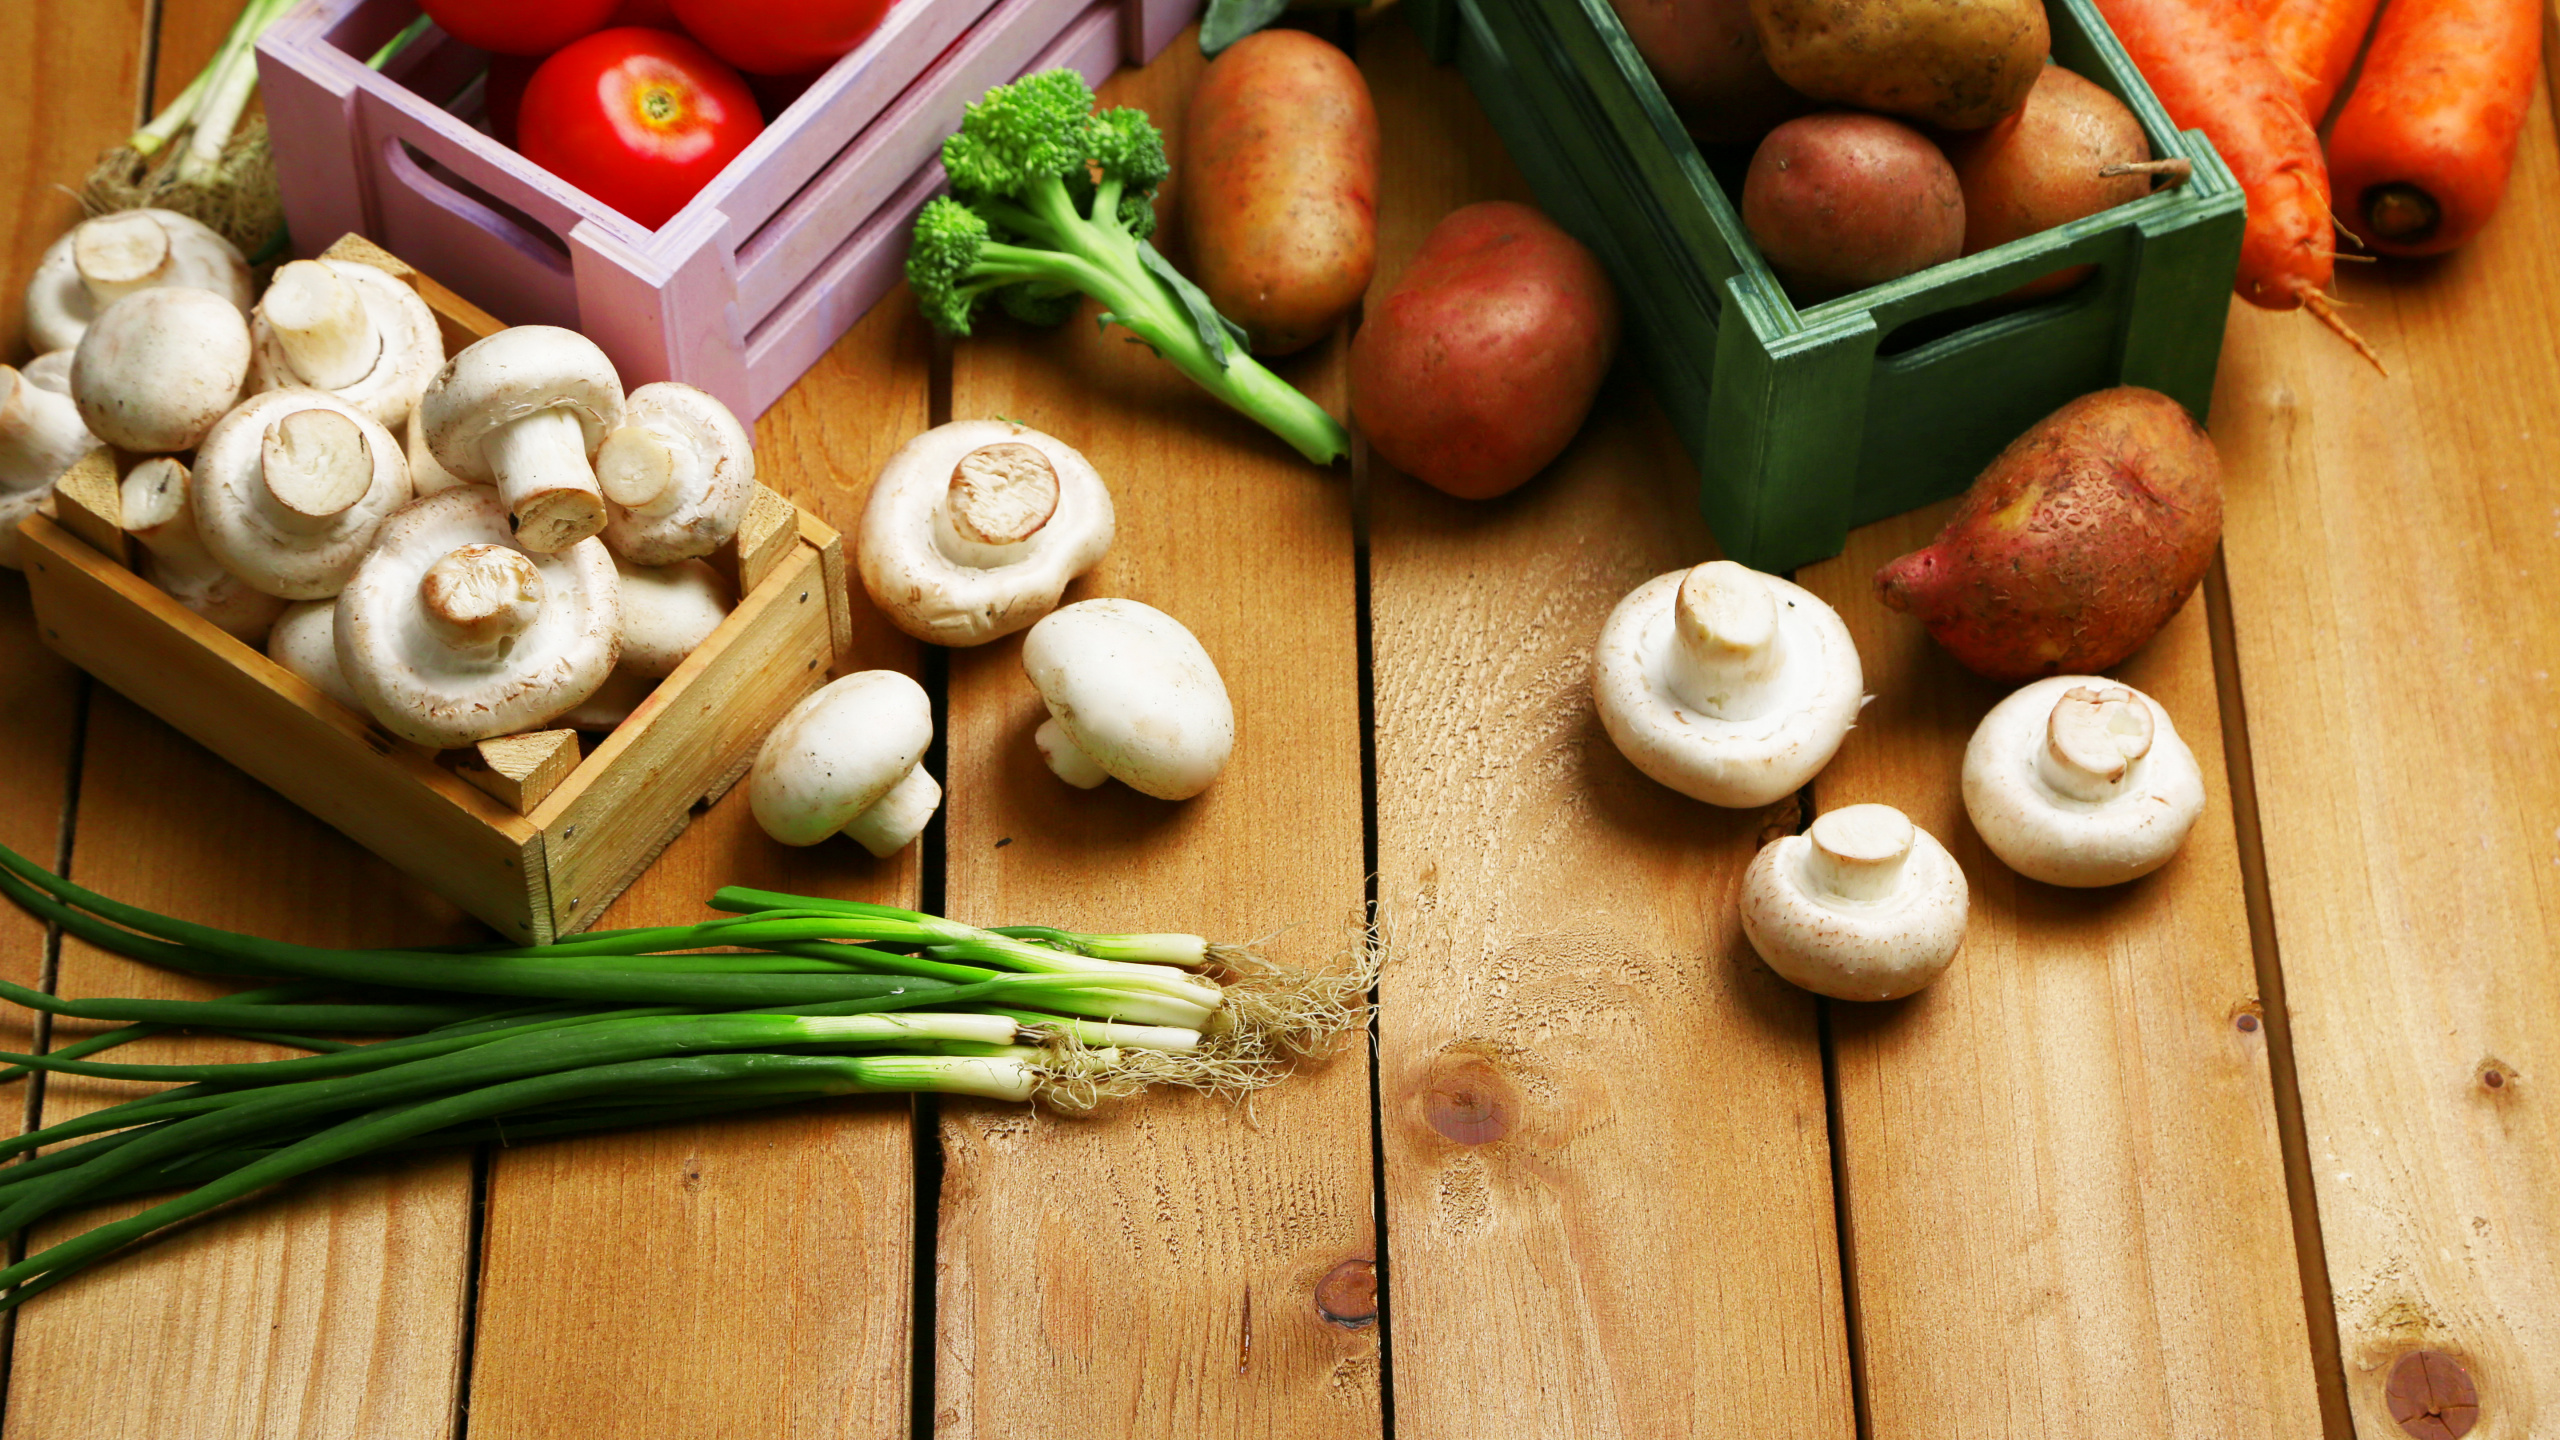 素食, 蘑菇, 马铃薯, 食品, 天然的食物 壁纸 2560x1440 允许